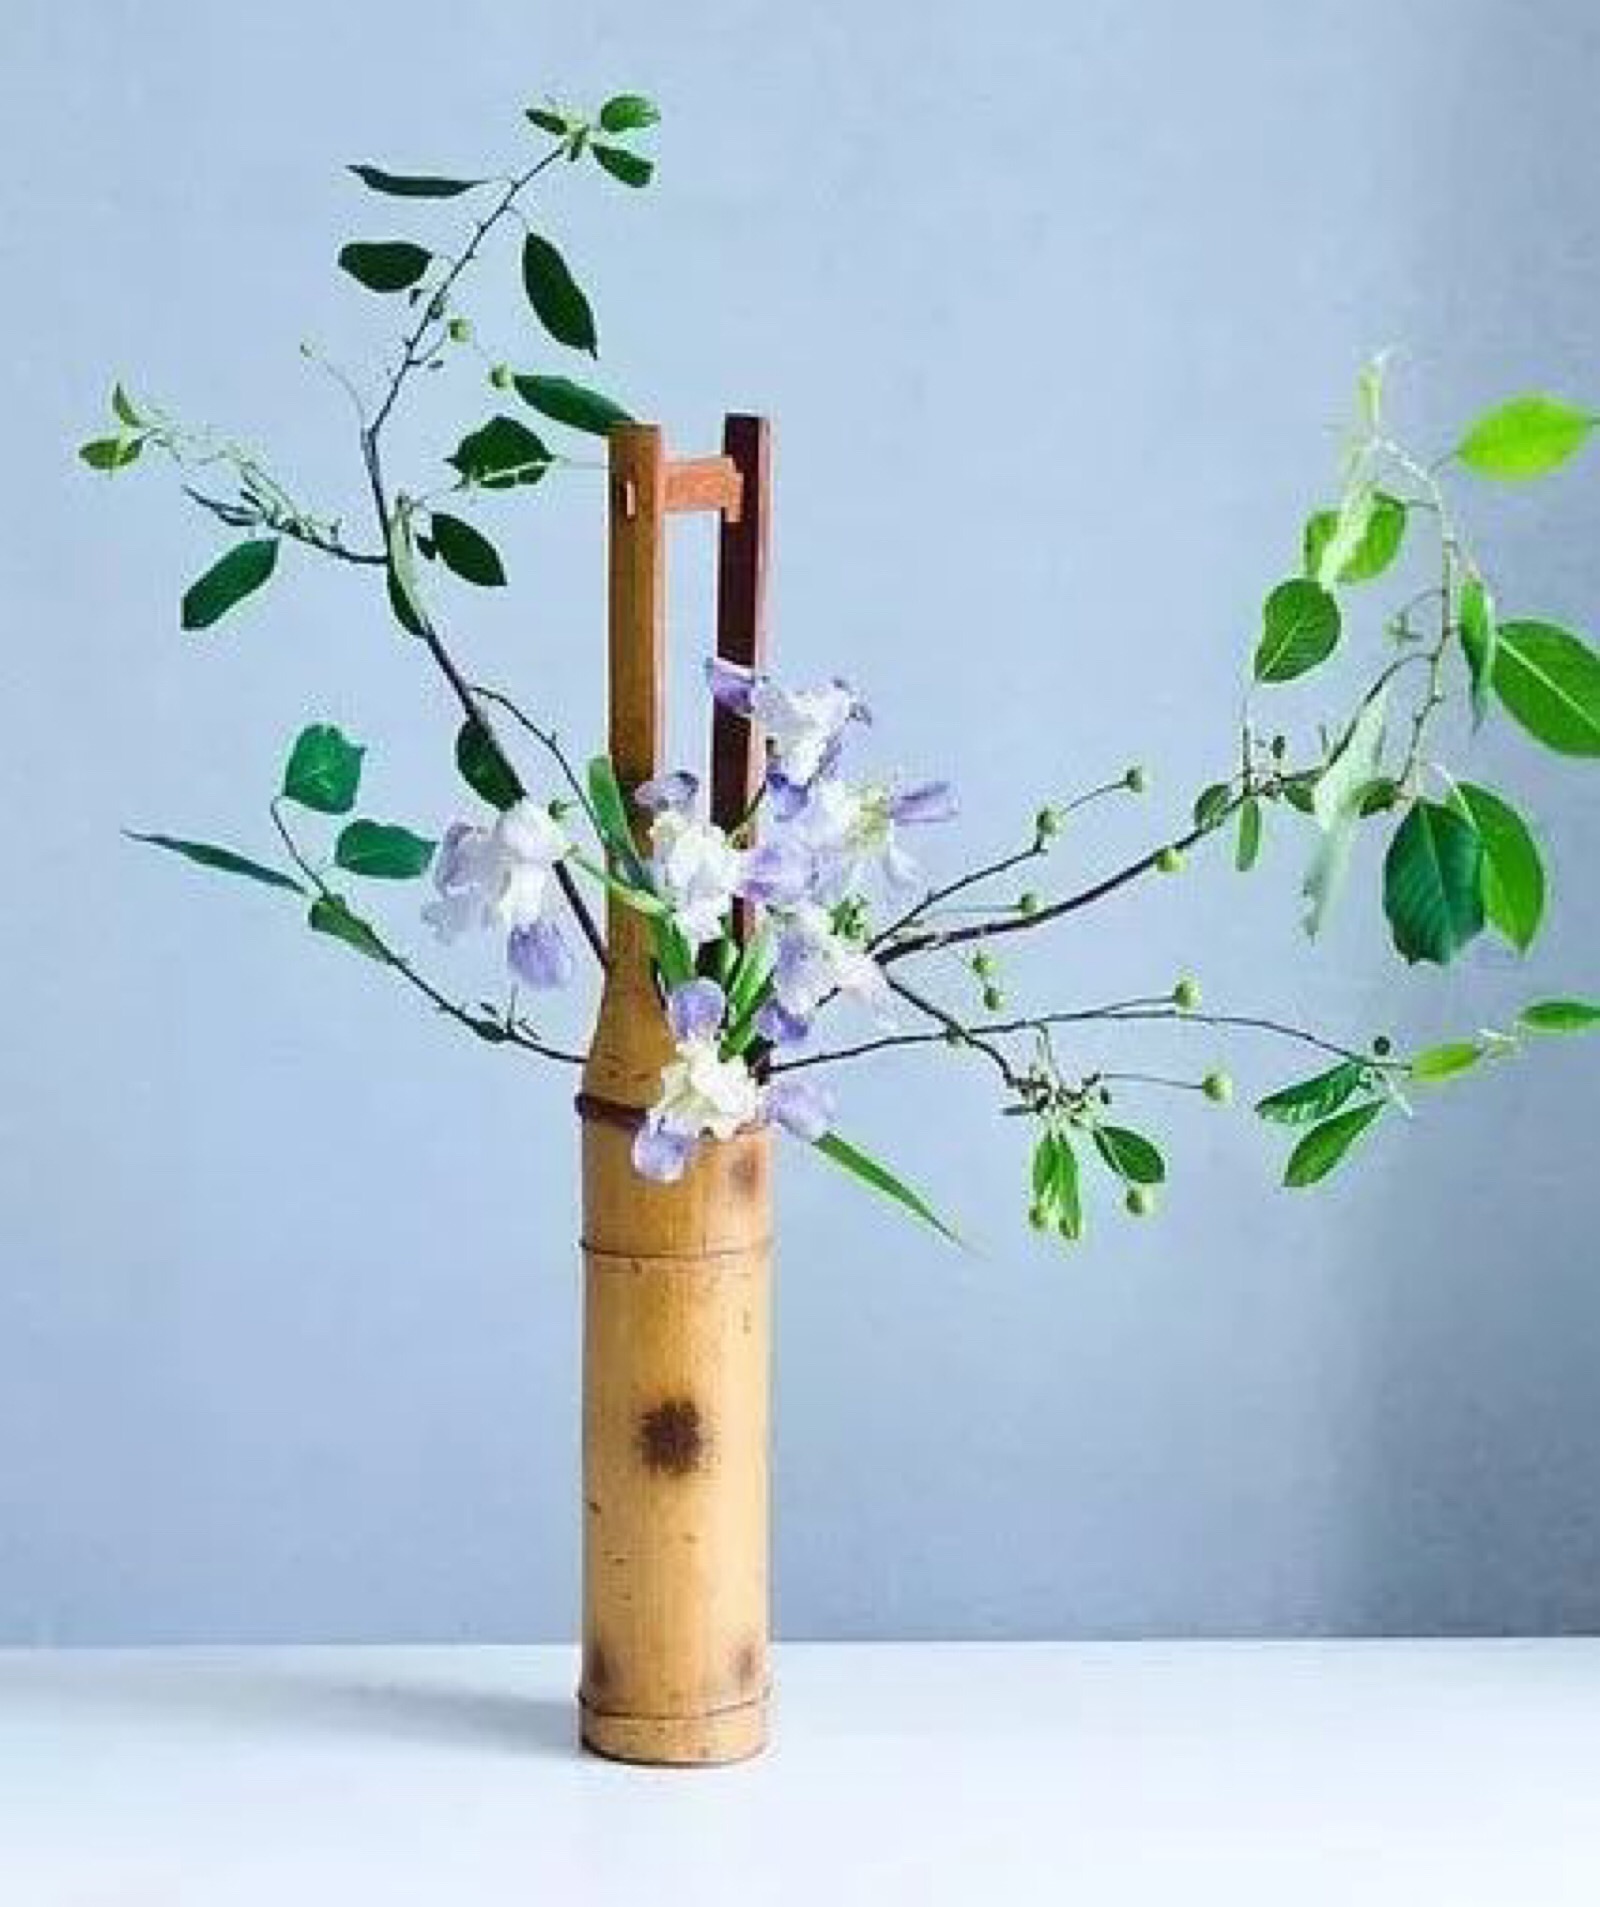 竹花筒插花的要点在于简洁自然,有一种生命从竹筒内向外张望的欣喜感